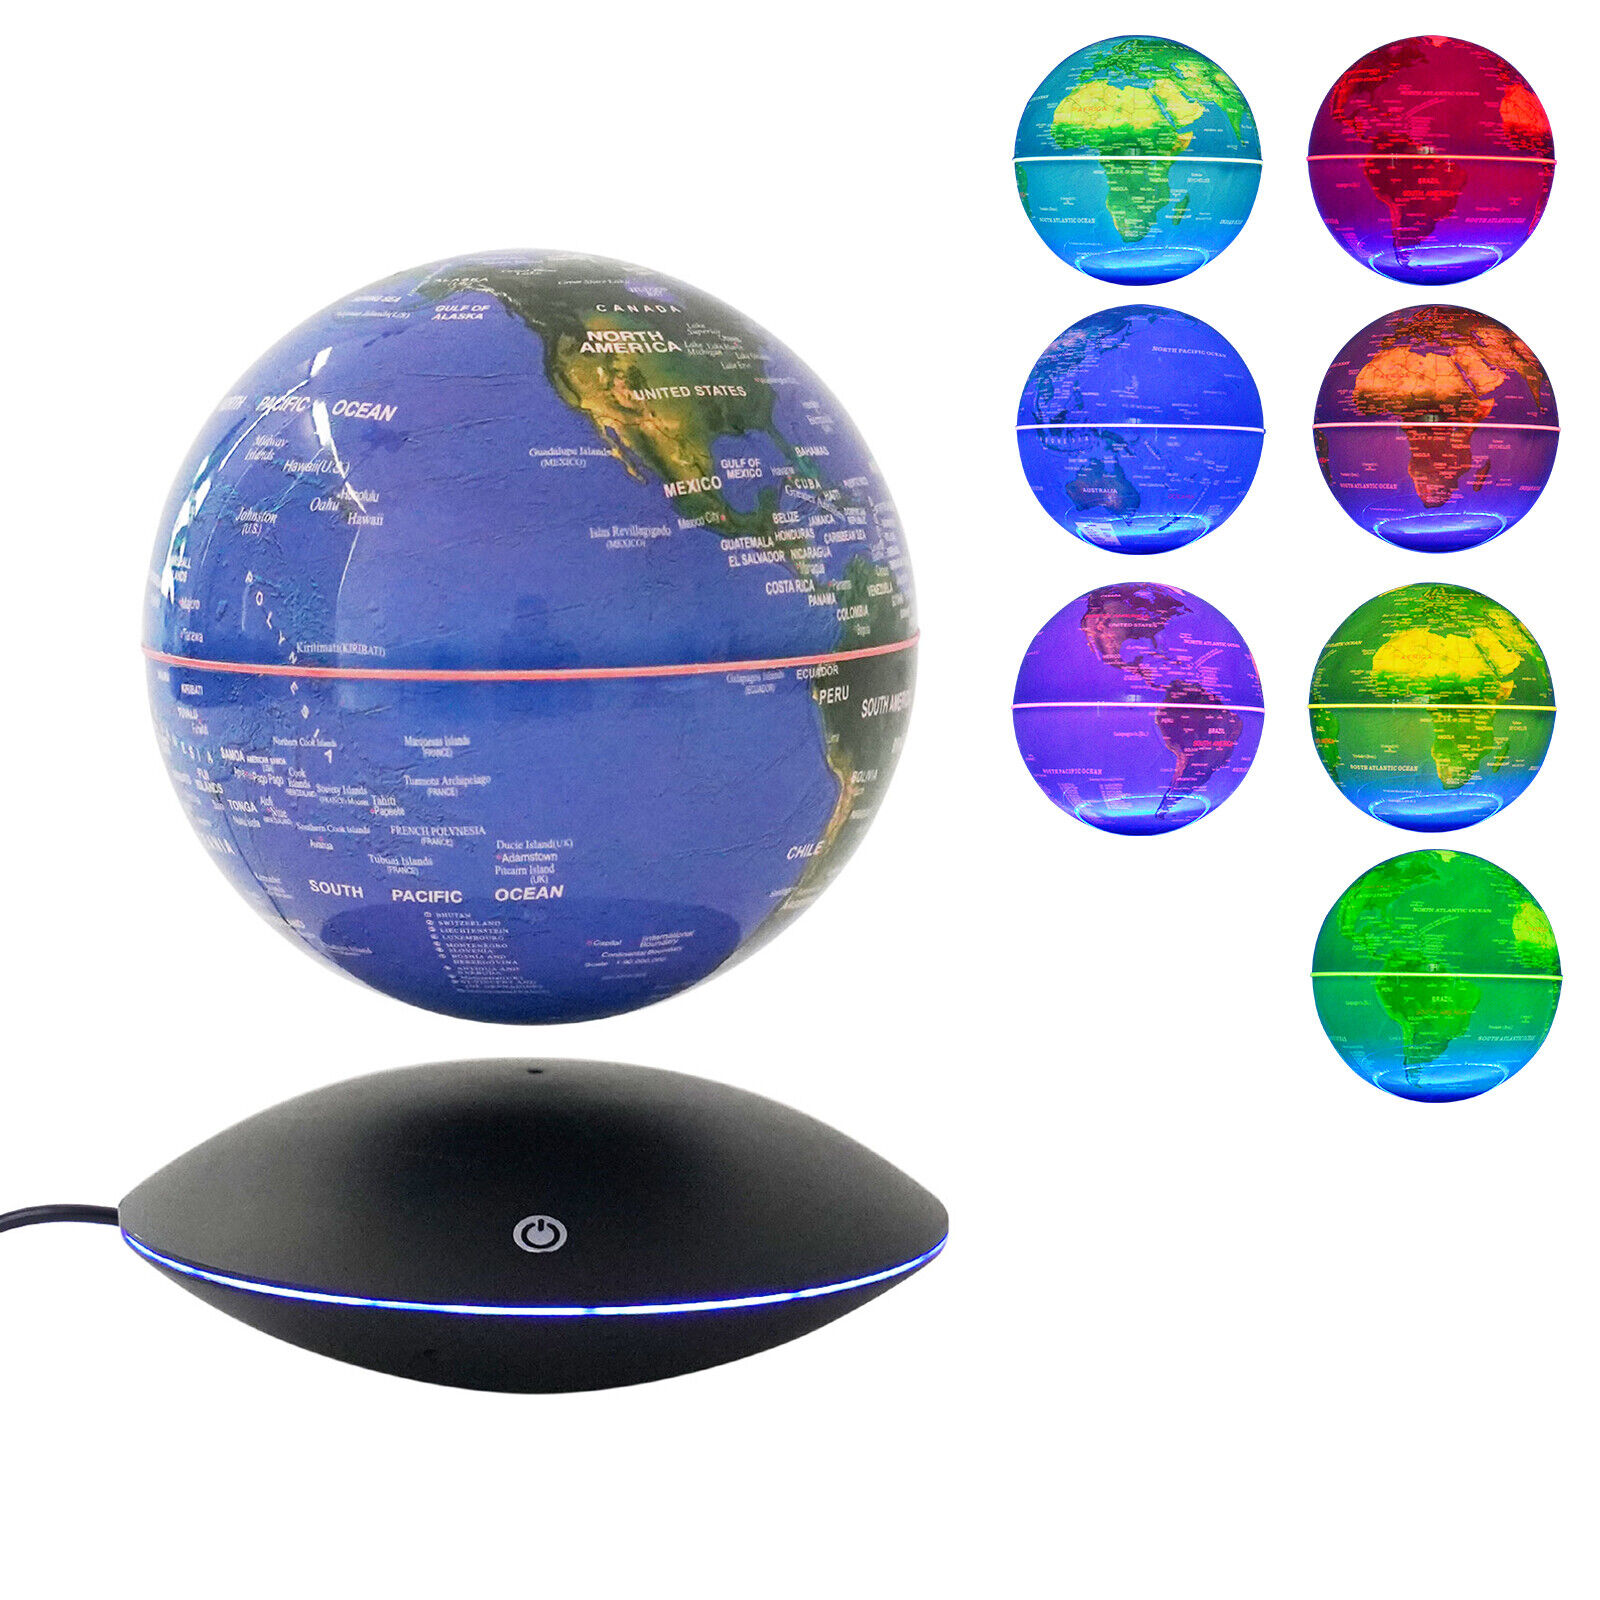 LED Globe Magnetic Levitation Floating Globe Light World Map Rotating Night Lamp